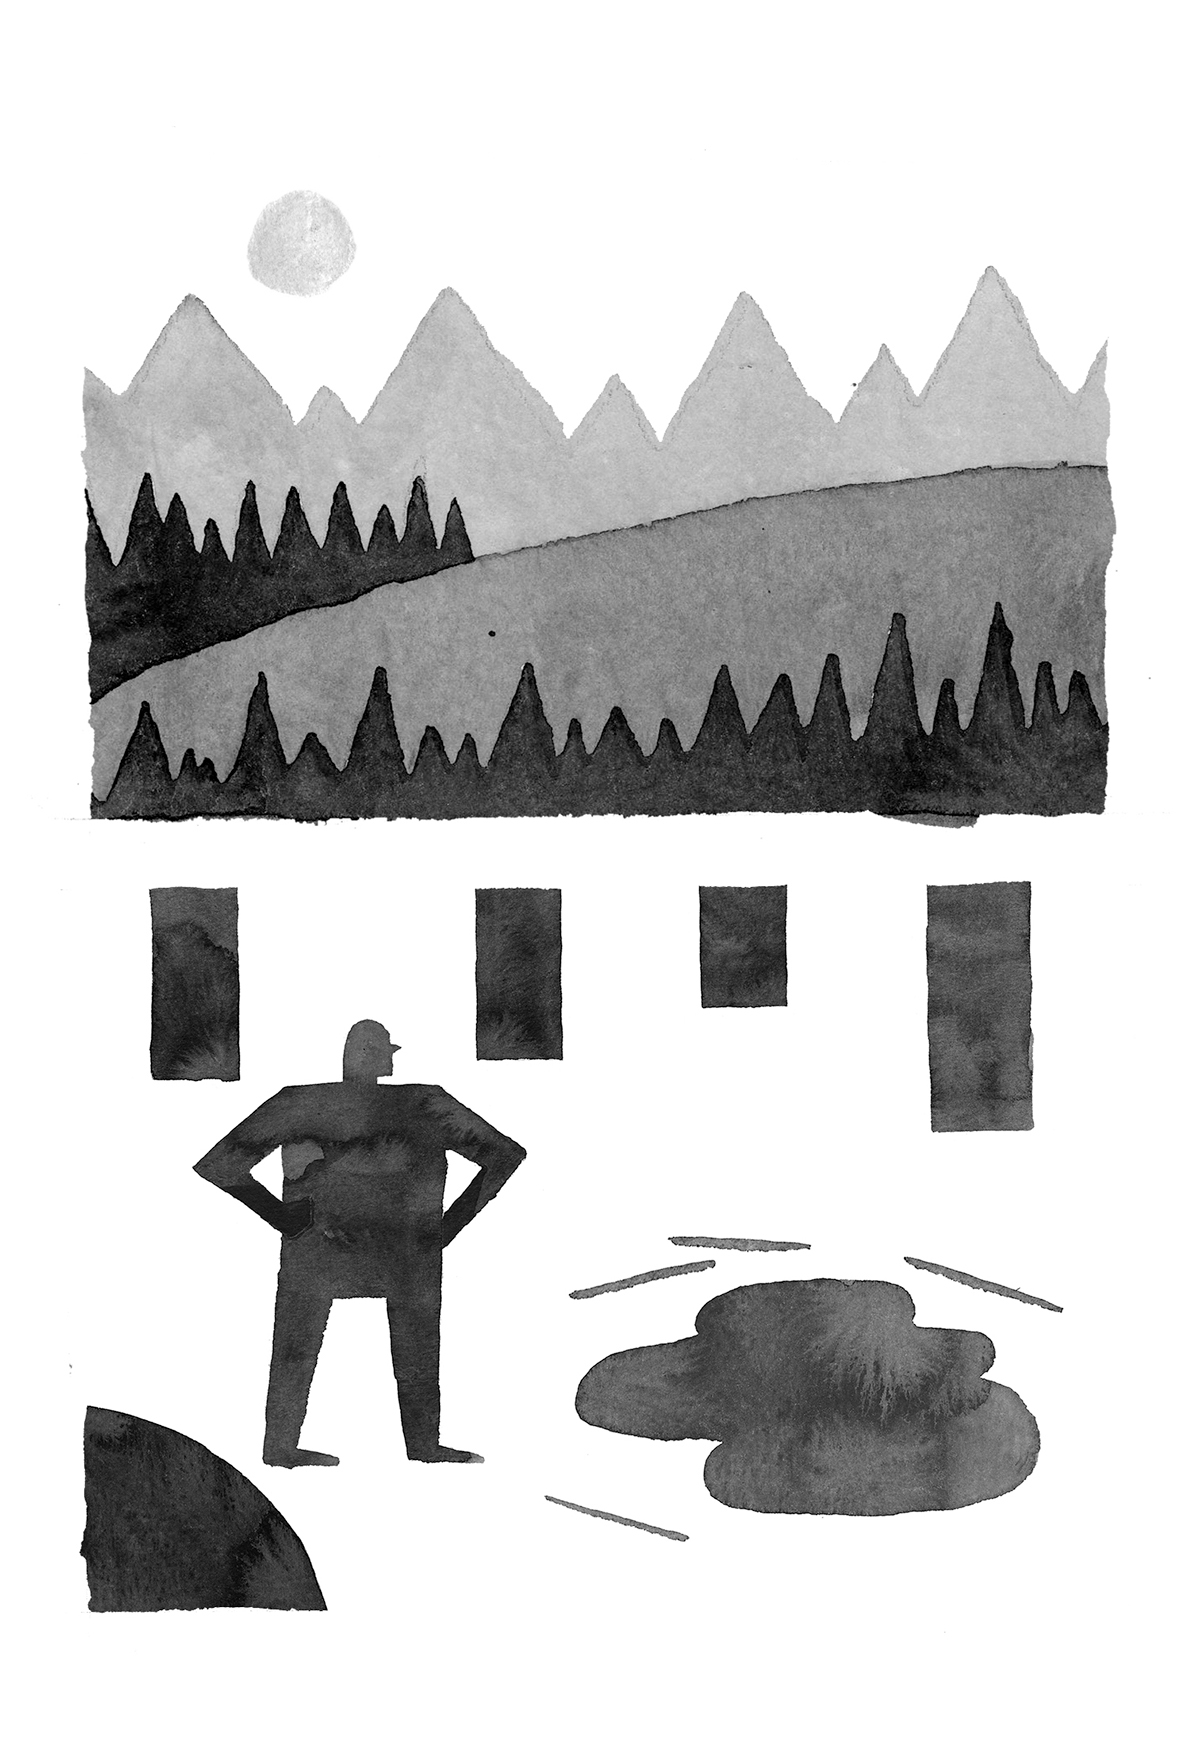 Zine  camping woods wilderness Bigfoot deer cabin tent trees abstract design minimal minimalist ink